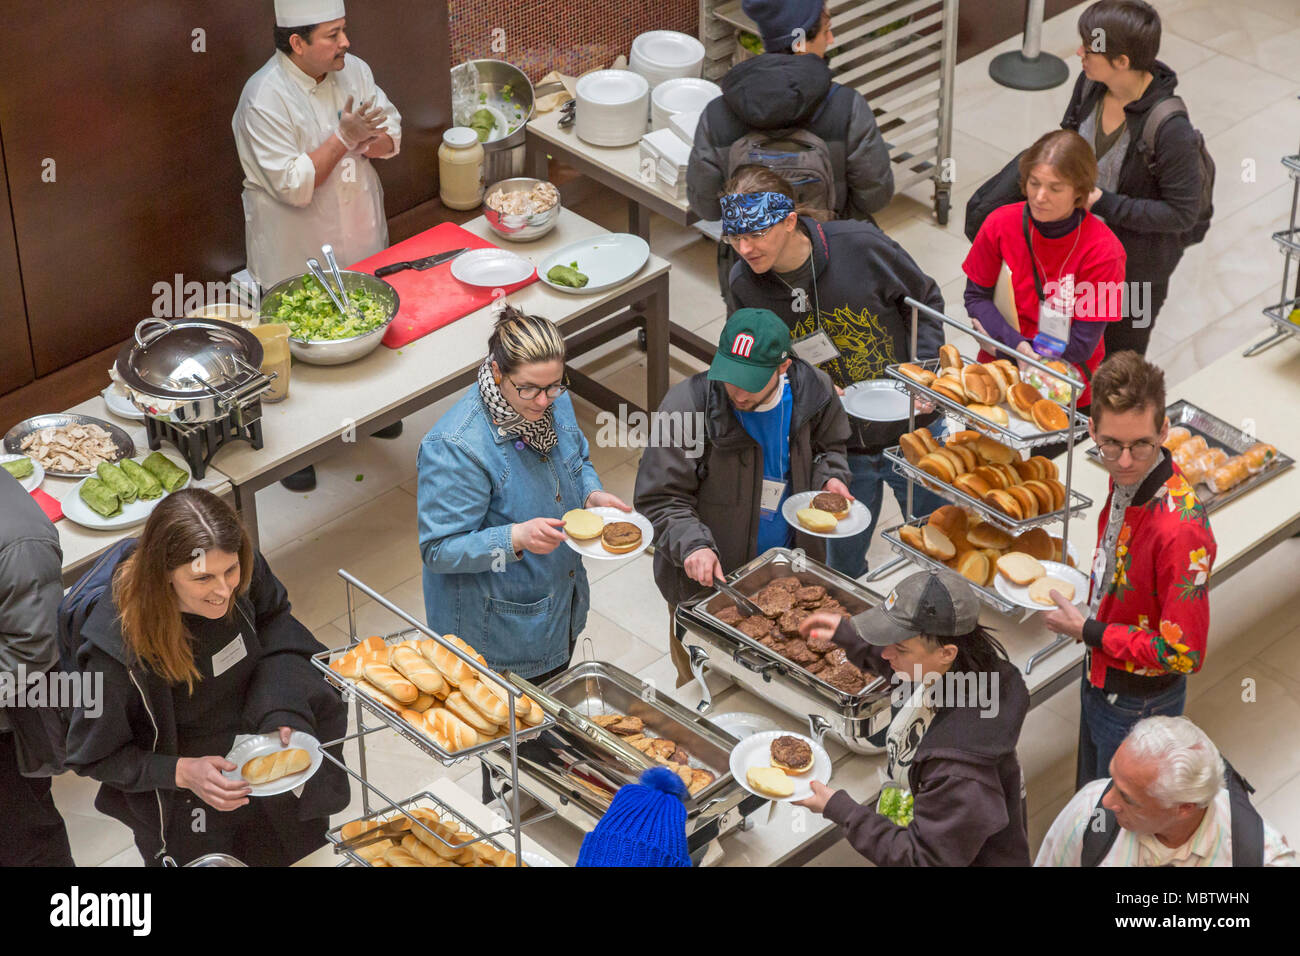 Rosemont, Illinois - Il pranzo è servito alle persone per partecipare ad una conferenza al Hyatt Regency O'Hare Hotel. Foto Stock